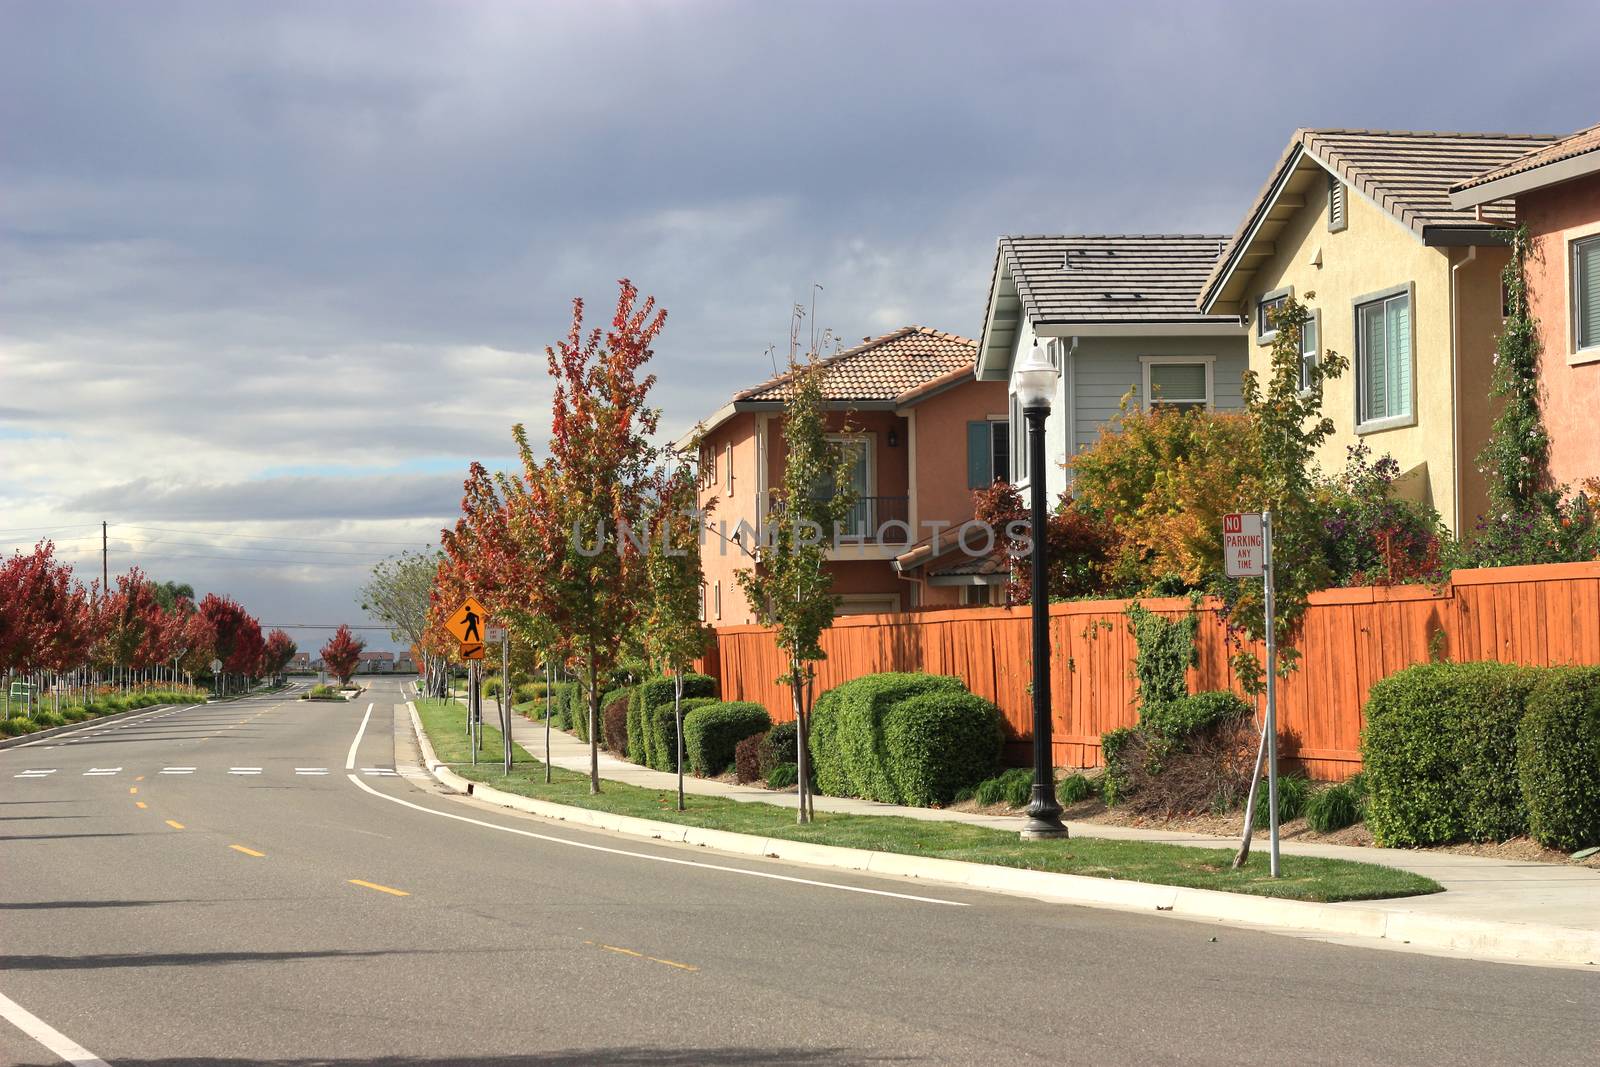 Row of houses in suburban neighborhood